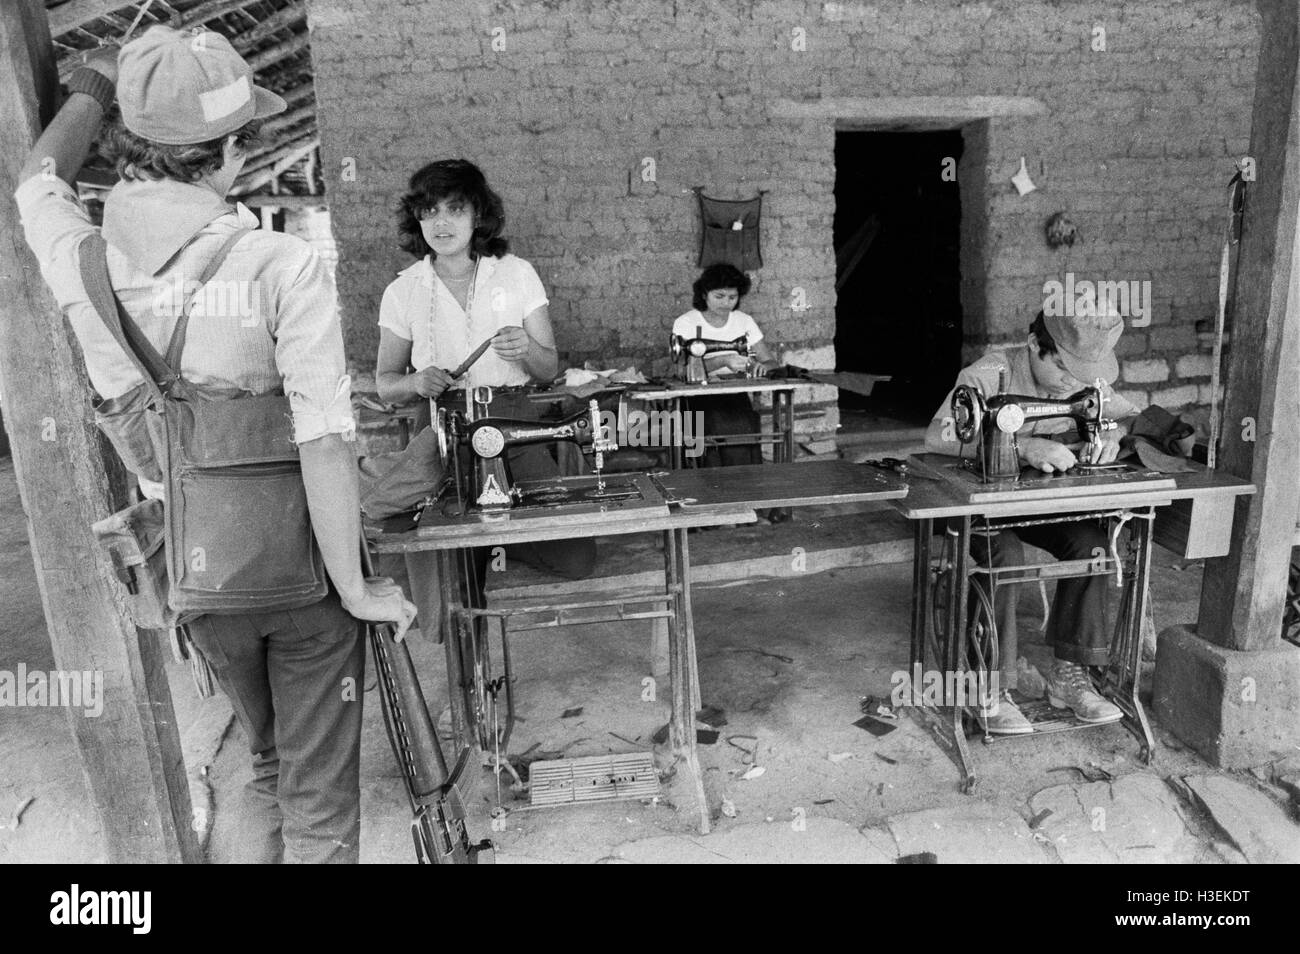 CHALATENANGO, EL SALVADOR, février 1984 : - dans le FPL Les zones de contrôle d'un atelier de décisions uniformes pour les guérilleros. Photo de Mike Goldwater Banque D'Images